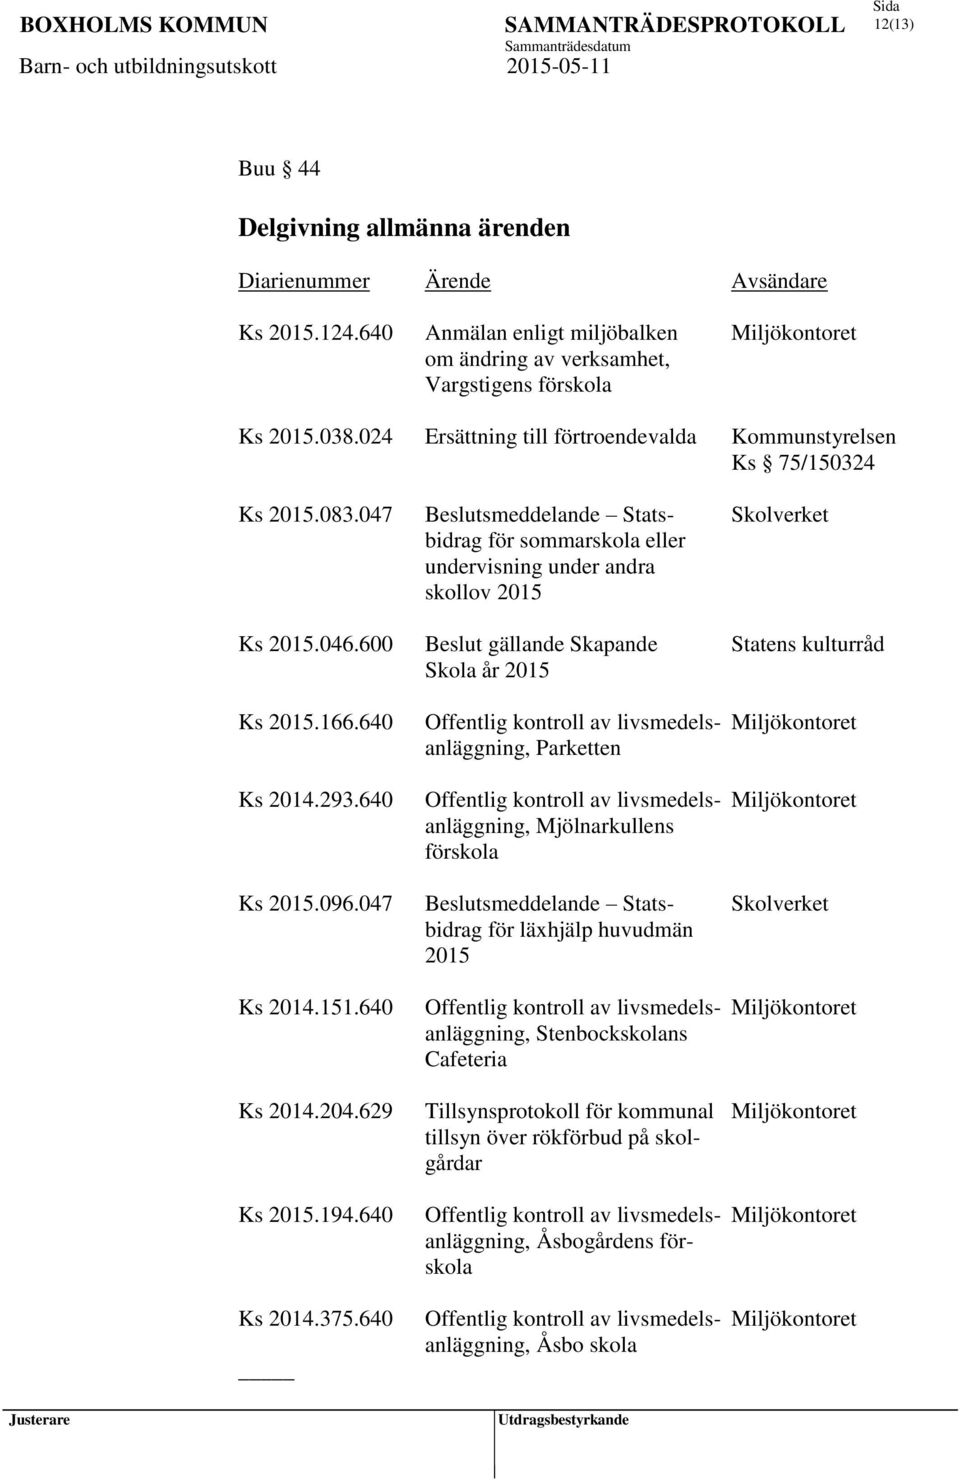 600 Beslut gällande Skapande Statens kulturråd Skola år 2015 Ks 2015.166.640 Ks 2014.293.